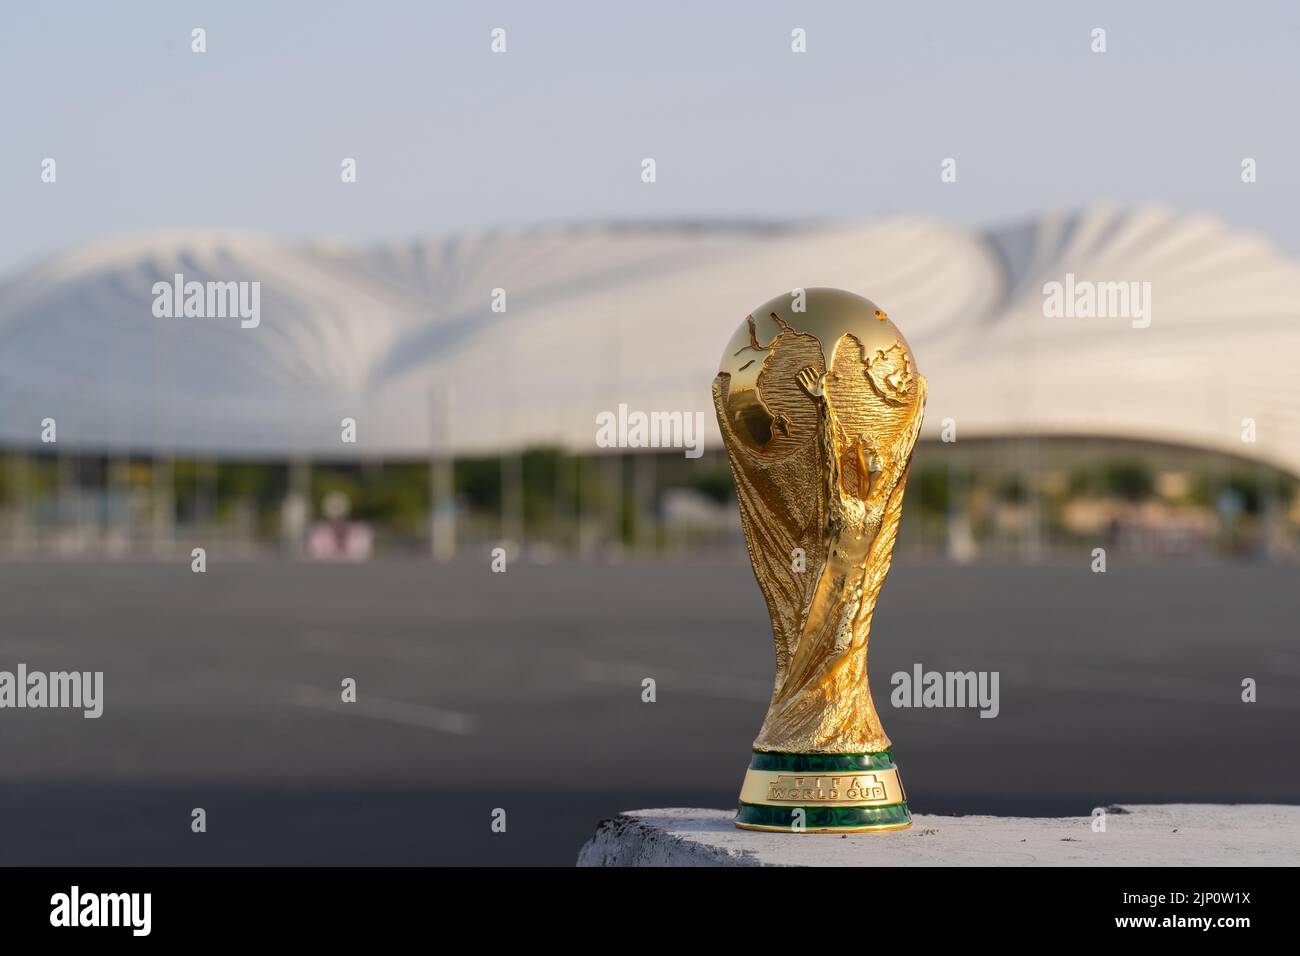 DOHA, QATAR - 14 AOÛT 2022 : trophée de la coupe du monde de la FIFA sur fond de stade Al Janoub au Qatar. Banque D'Images